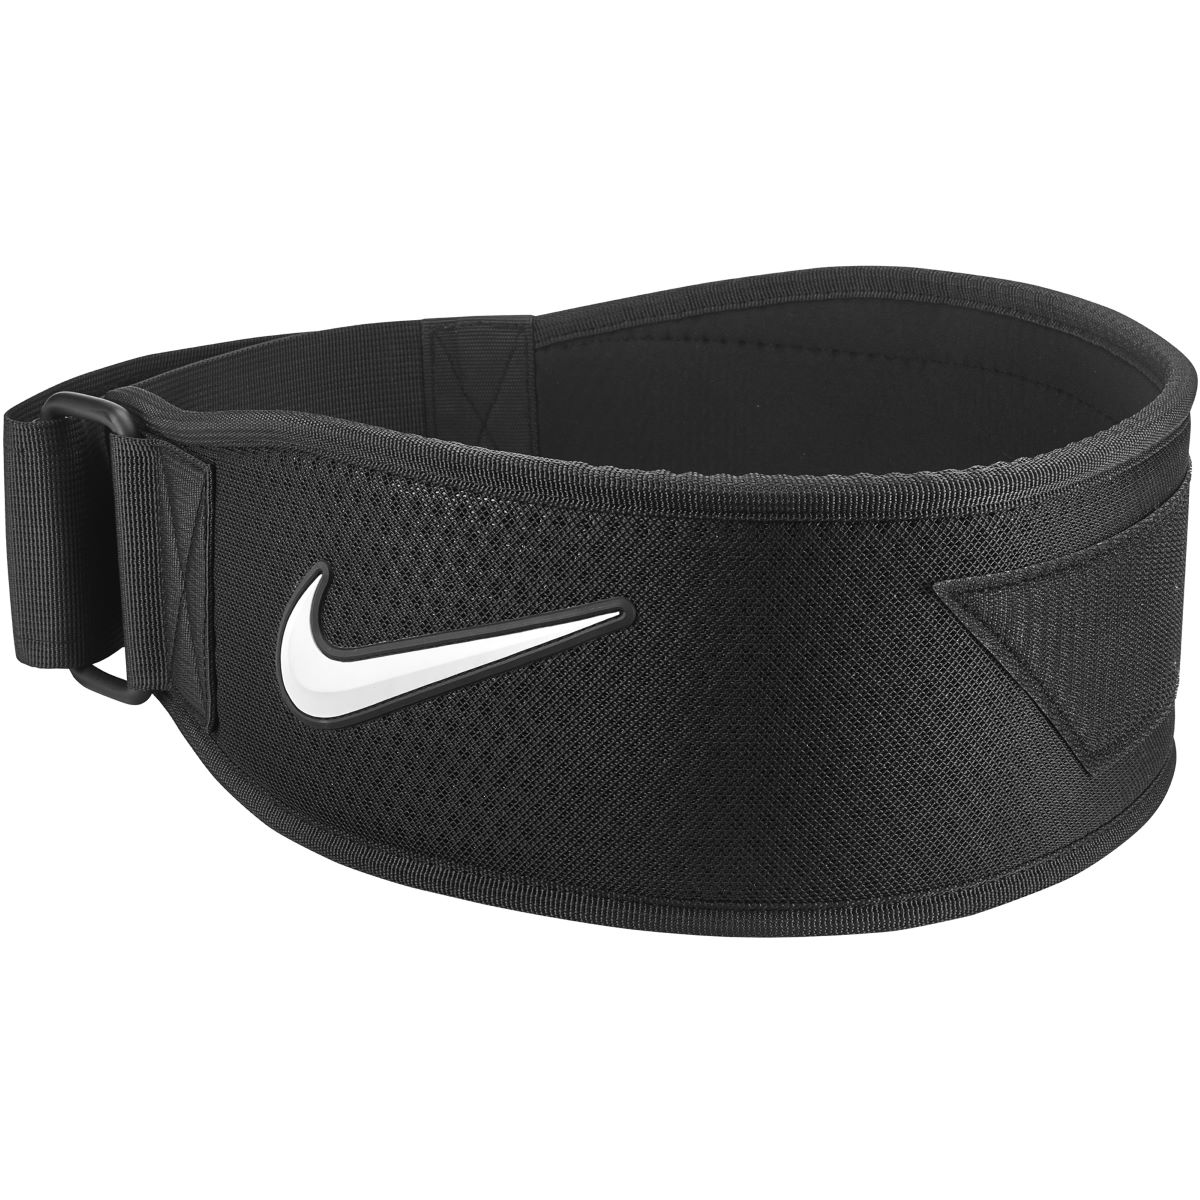 Cinturón de entrenamiento Nike Mens Intensity - Cinturones de musculación